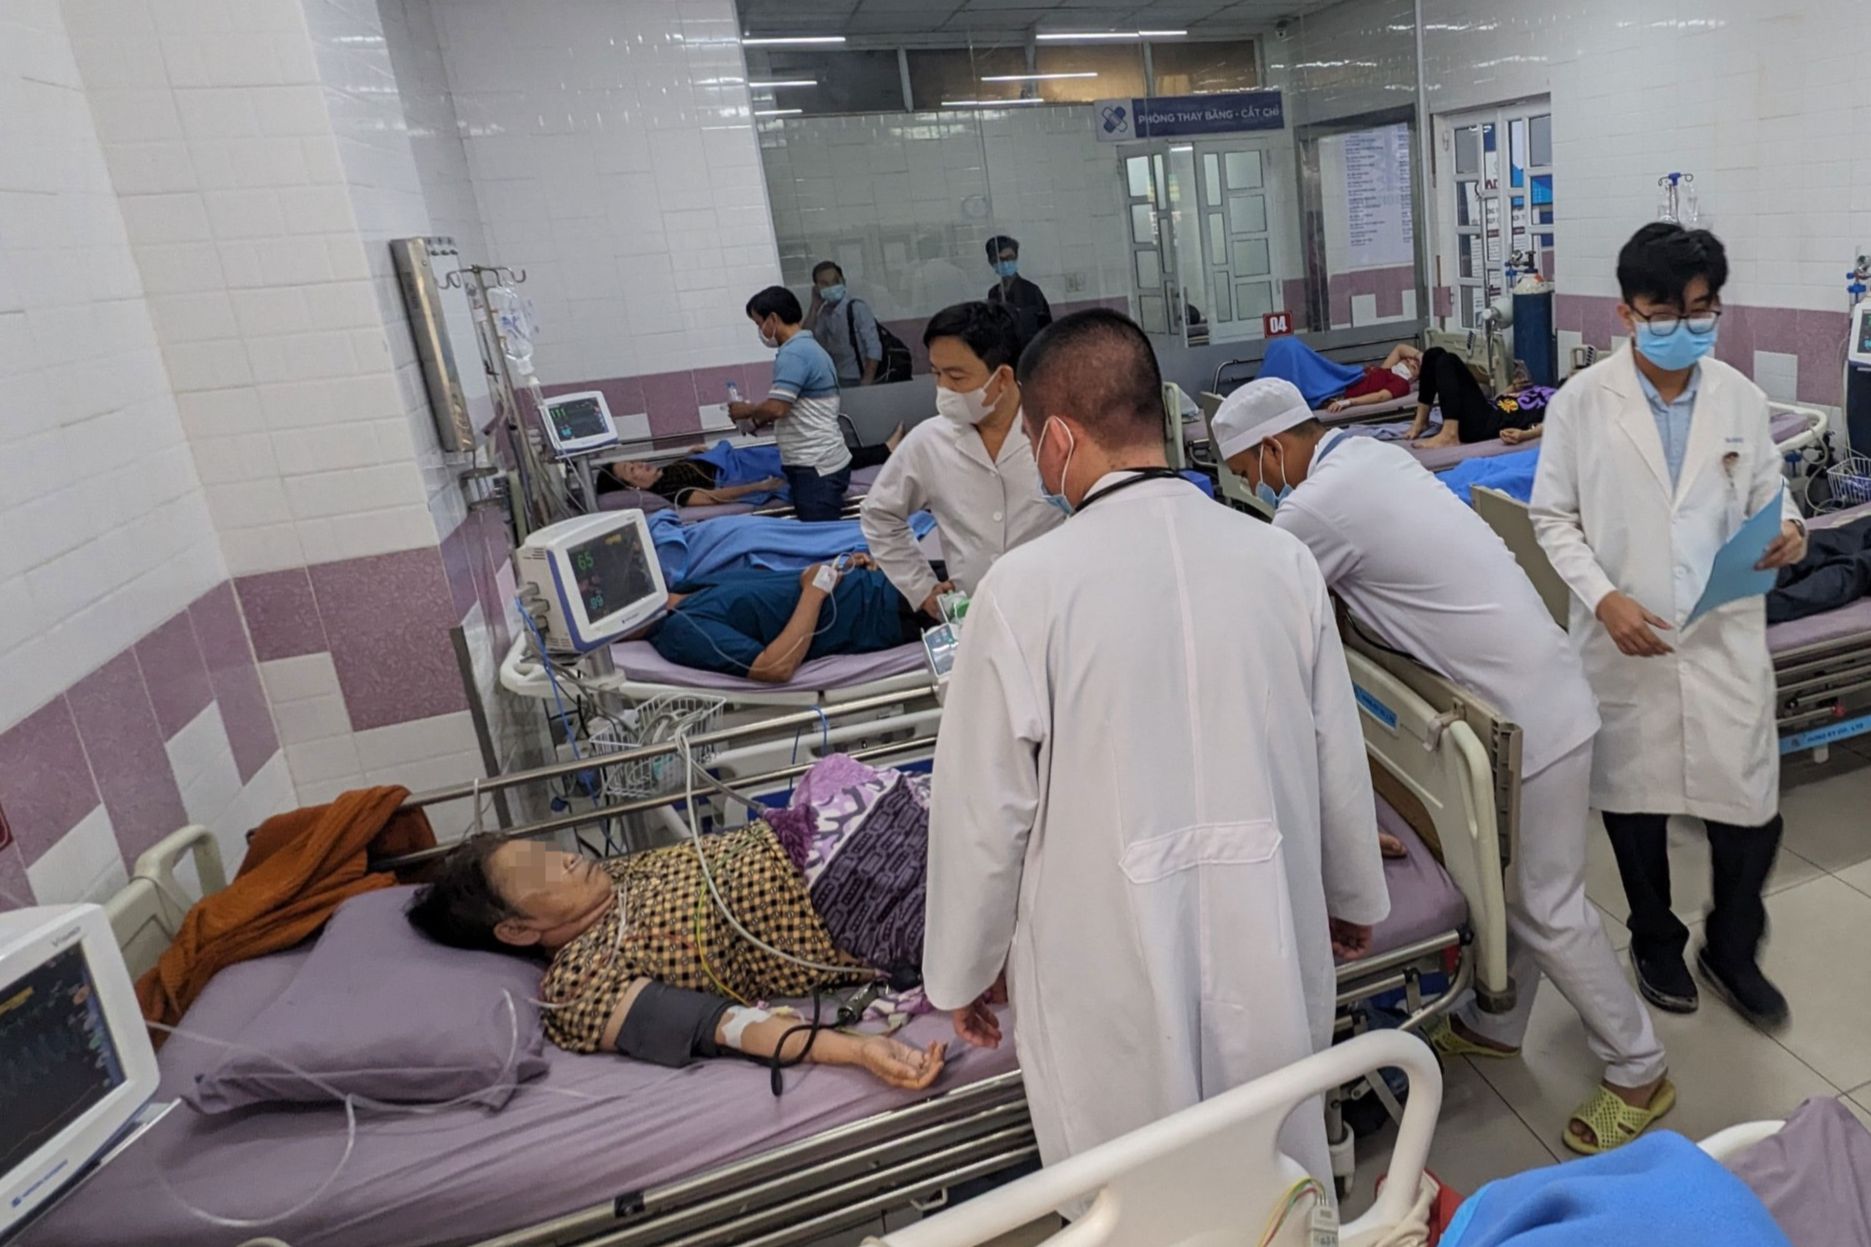 Hàng chục người ở Sóc Trăng nhập viện, nghi ngộ độc sau khi ăn bánh mì